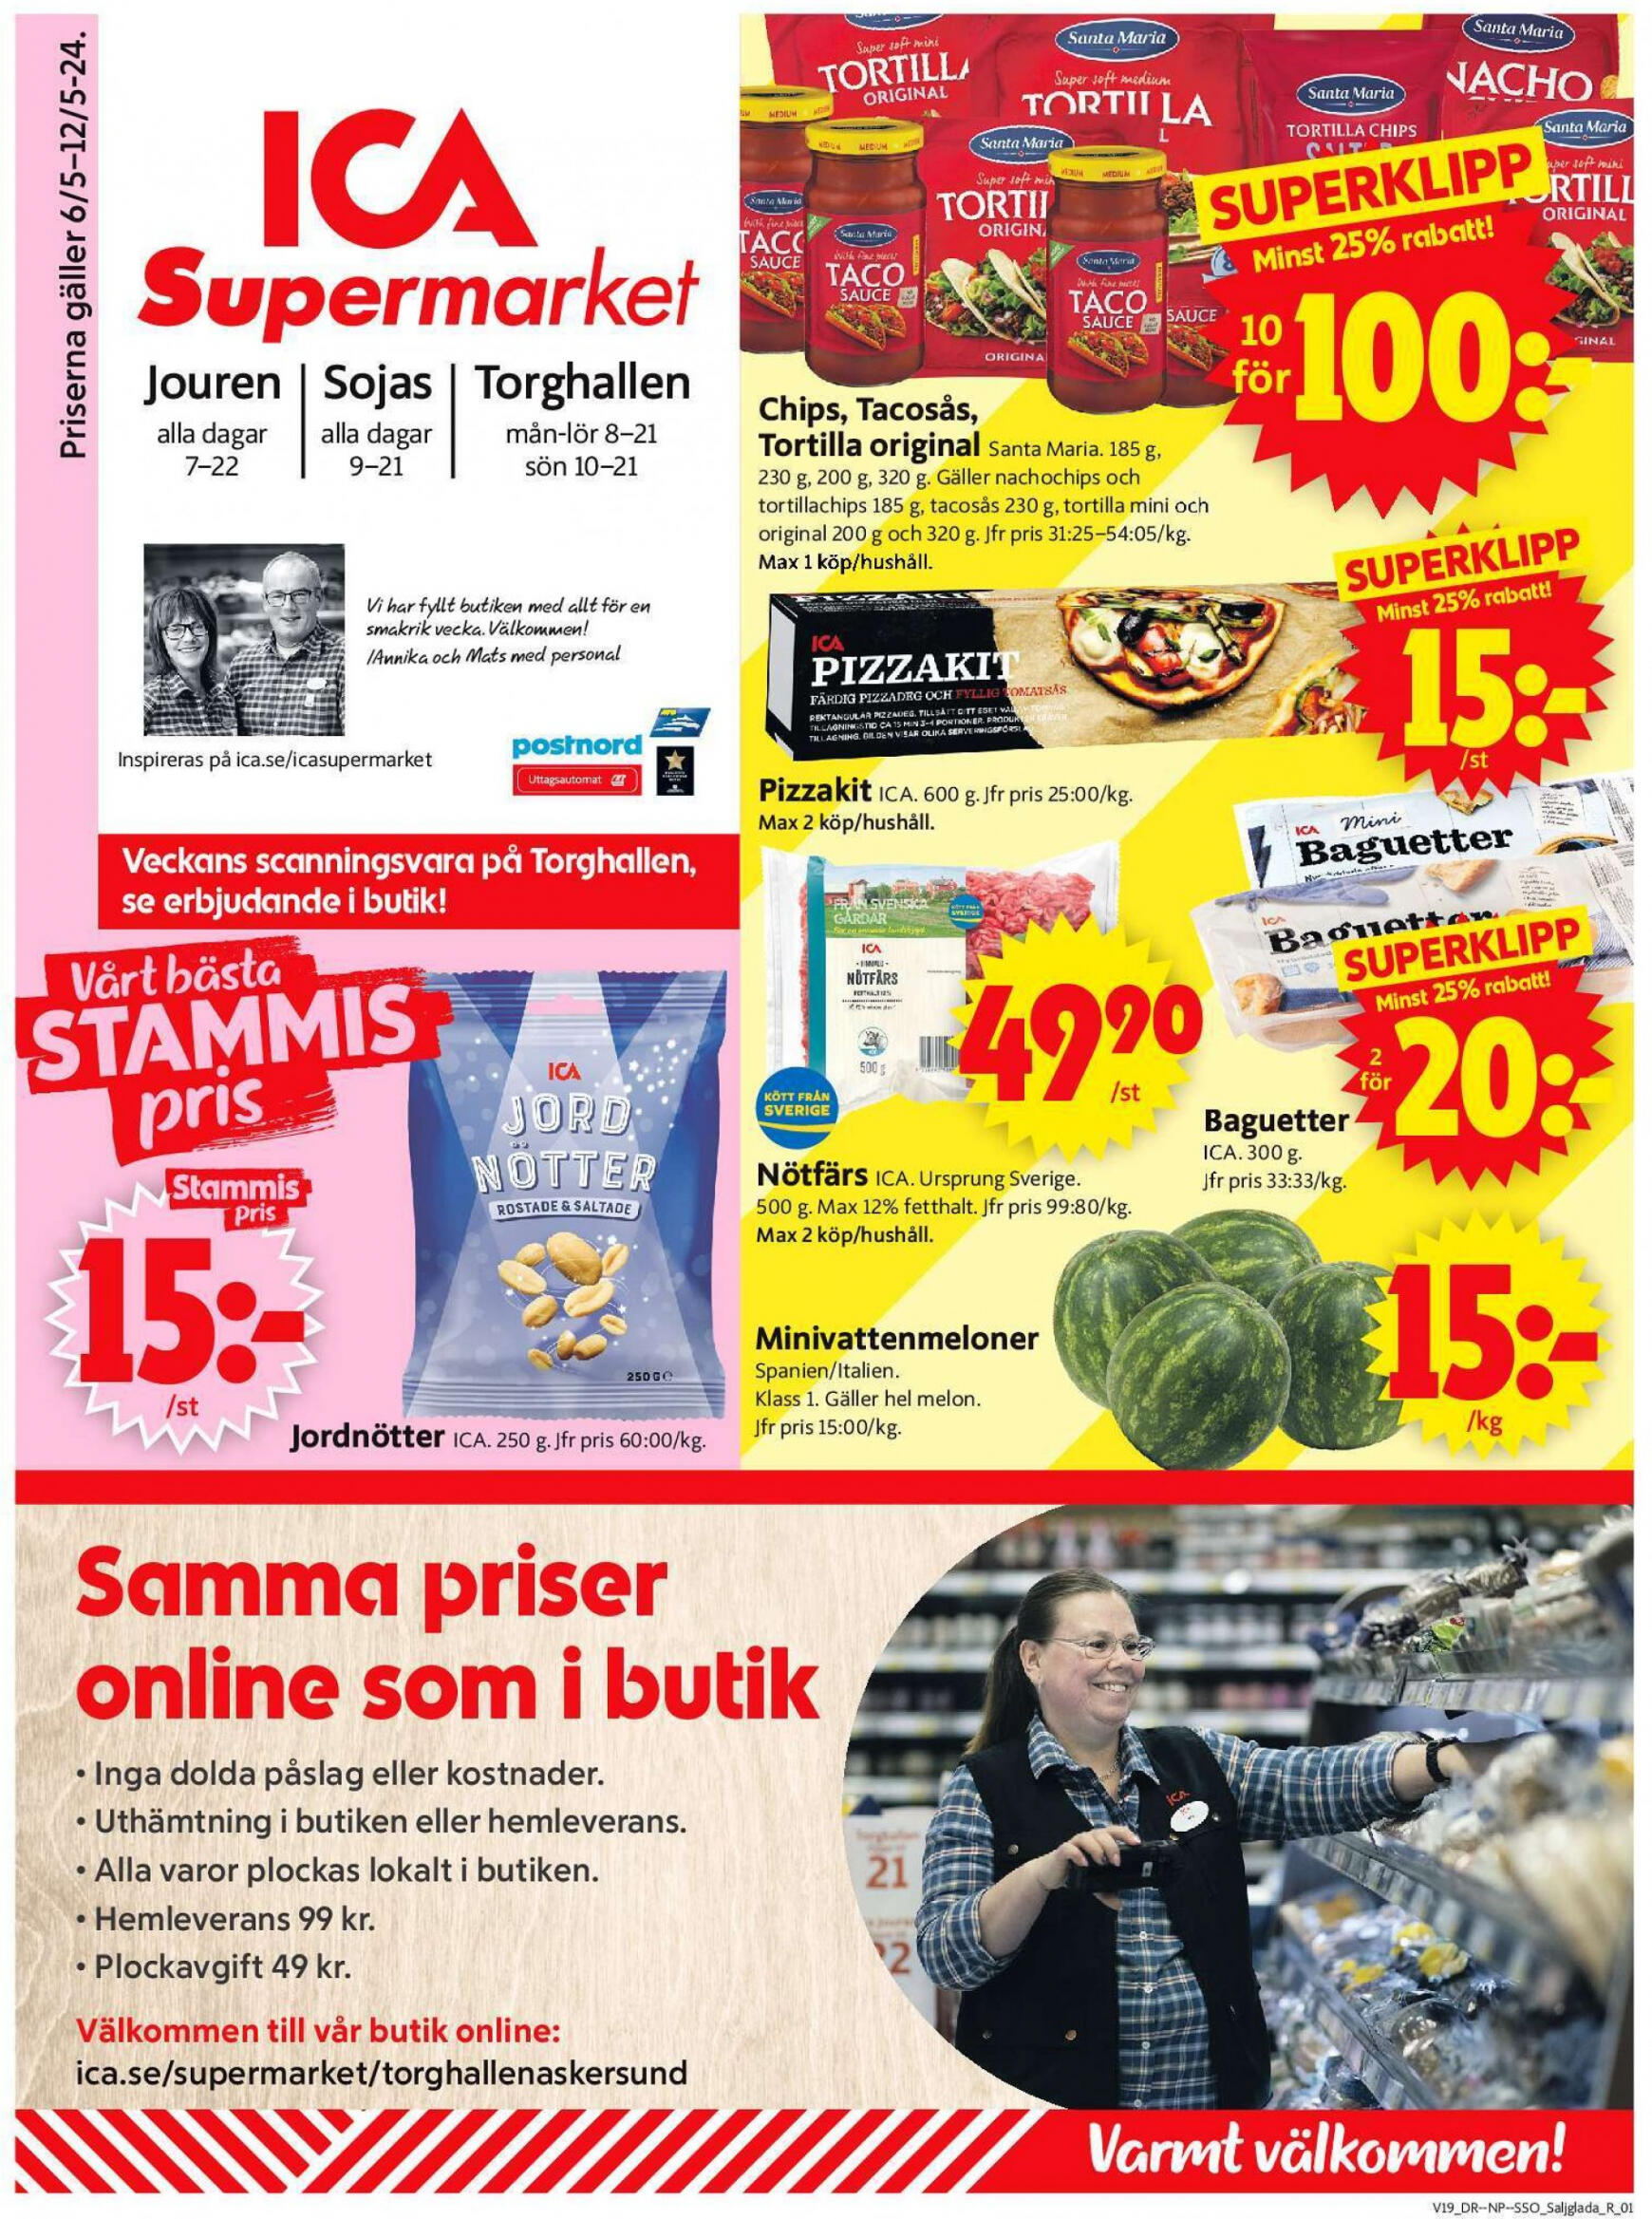 ica-supermarket - Flyer ICA Supermarket current 06.05. - 12.05. - page: 1